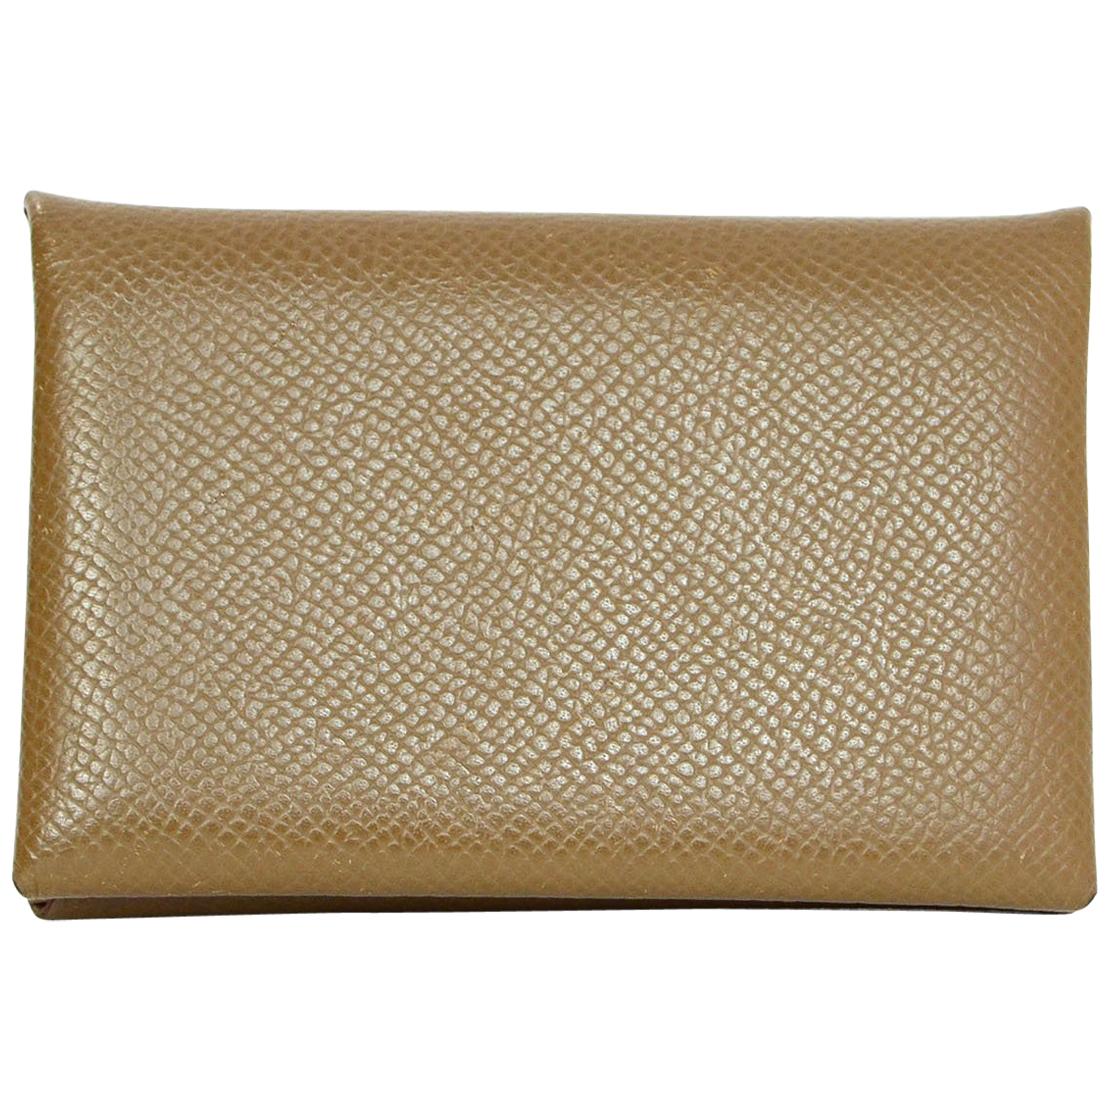 Hermes Taupe Epsom Leather Calfskin Calvi Card Holder